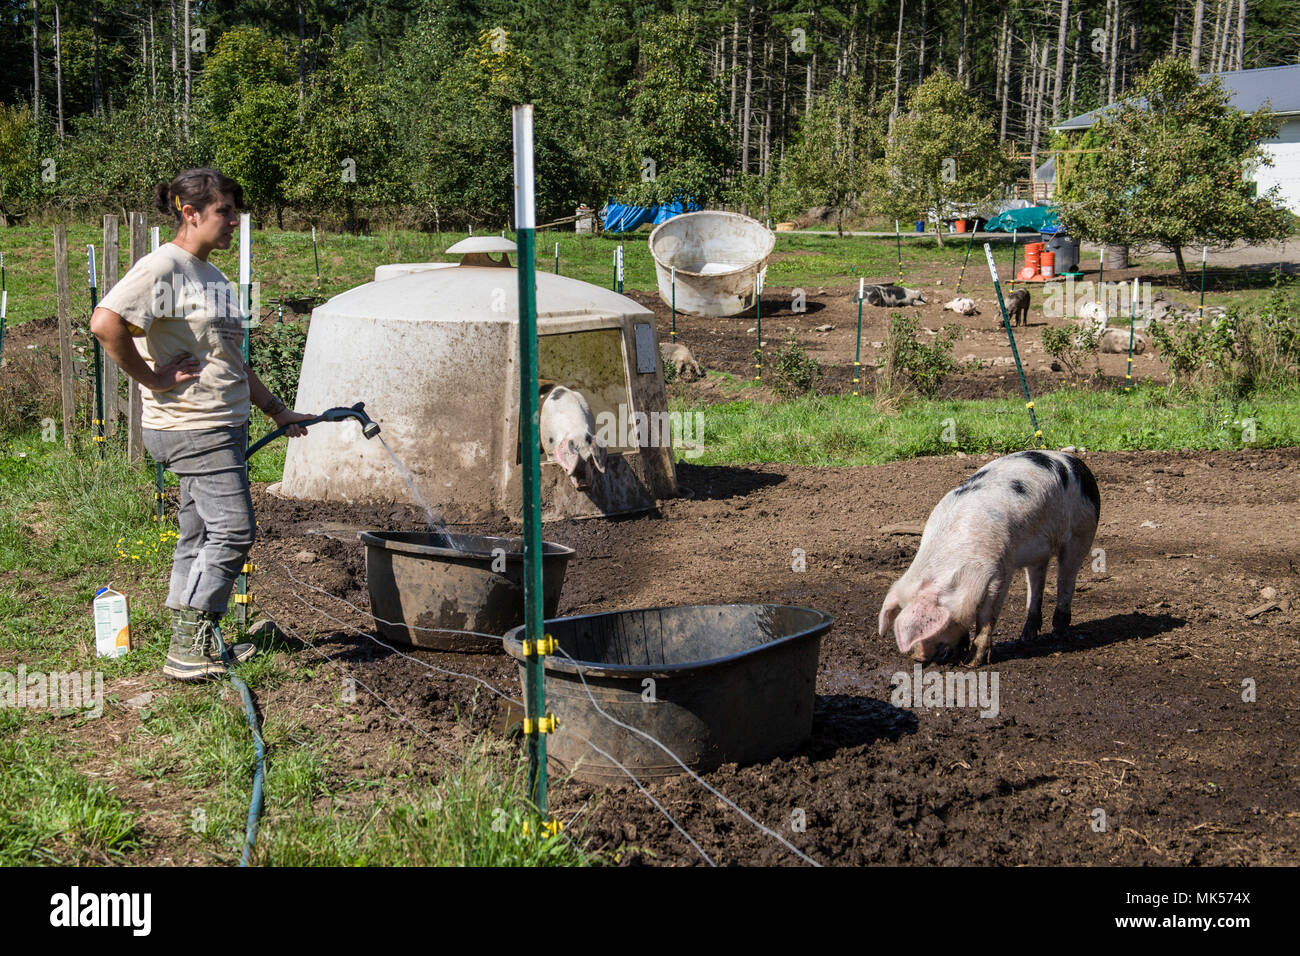 Nelke, Washington, USA. Frau neubefüllung Gloucestershire alte Flecken Schweine' Wasser Whirlpool. (Für die redaktionelle Nutzung) Stockfoto